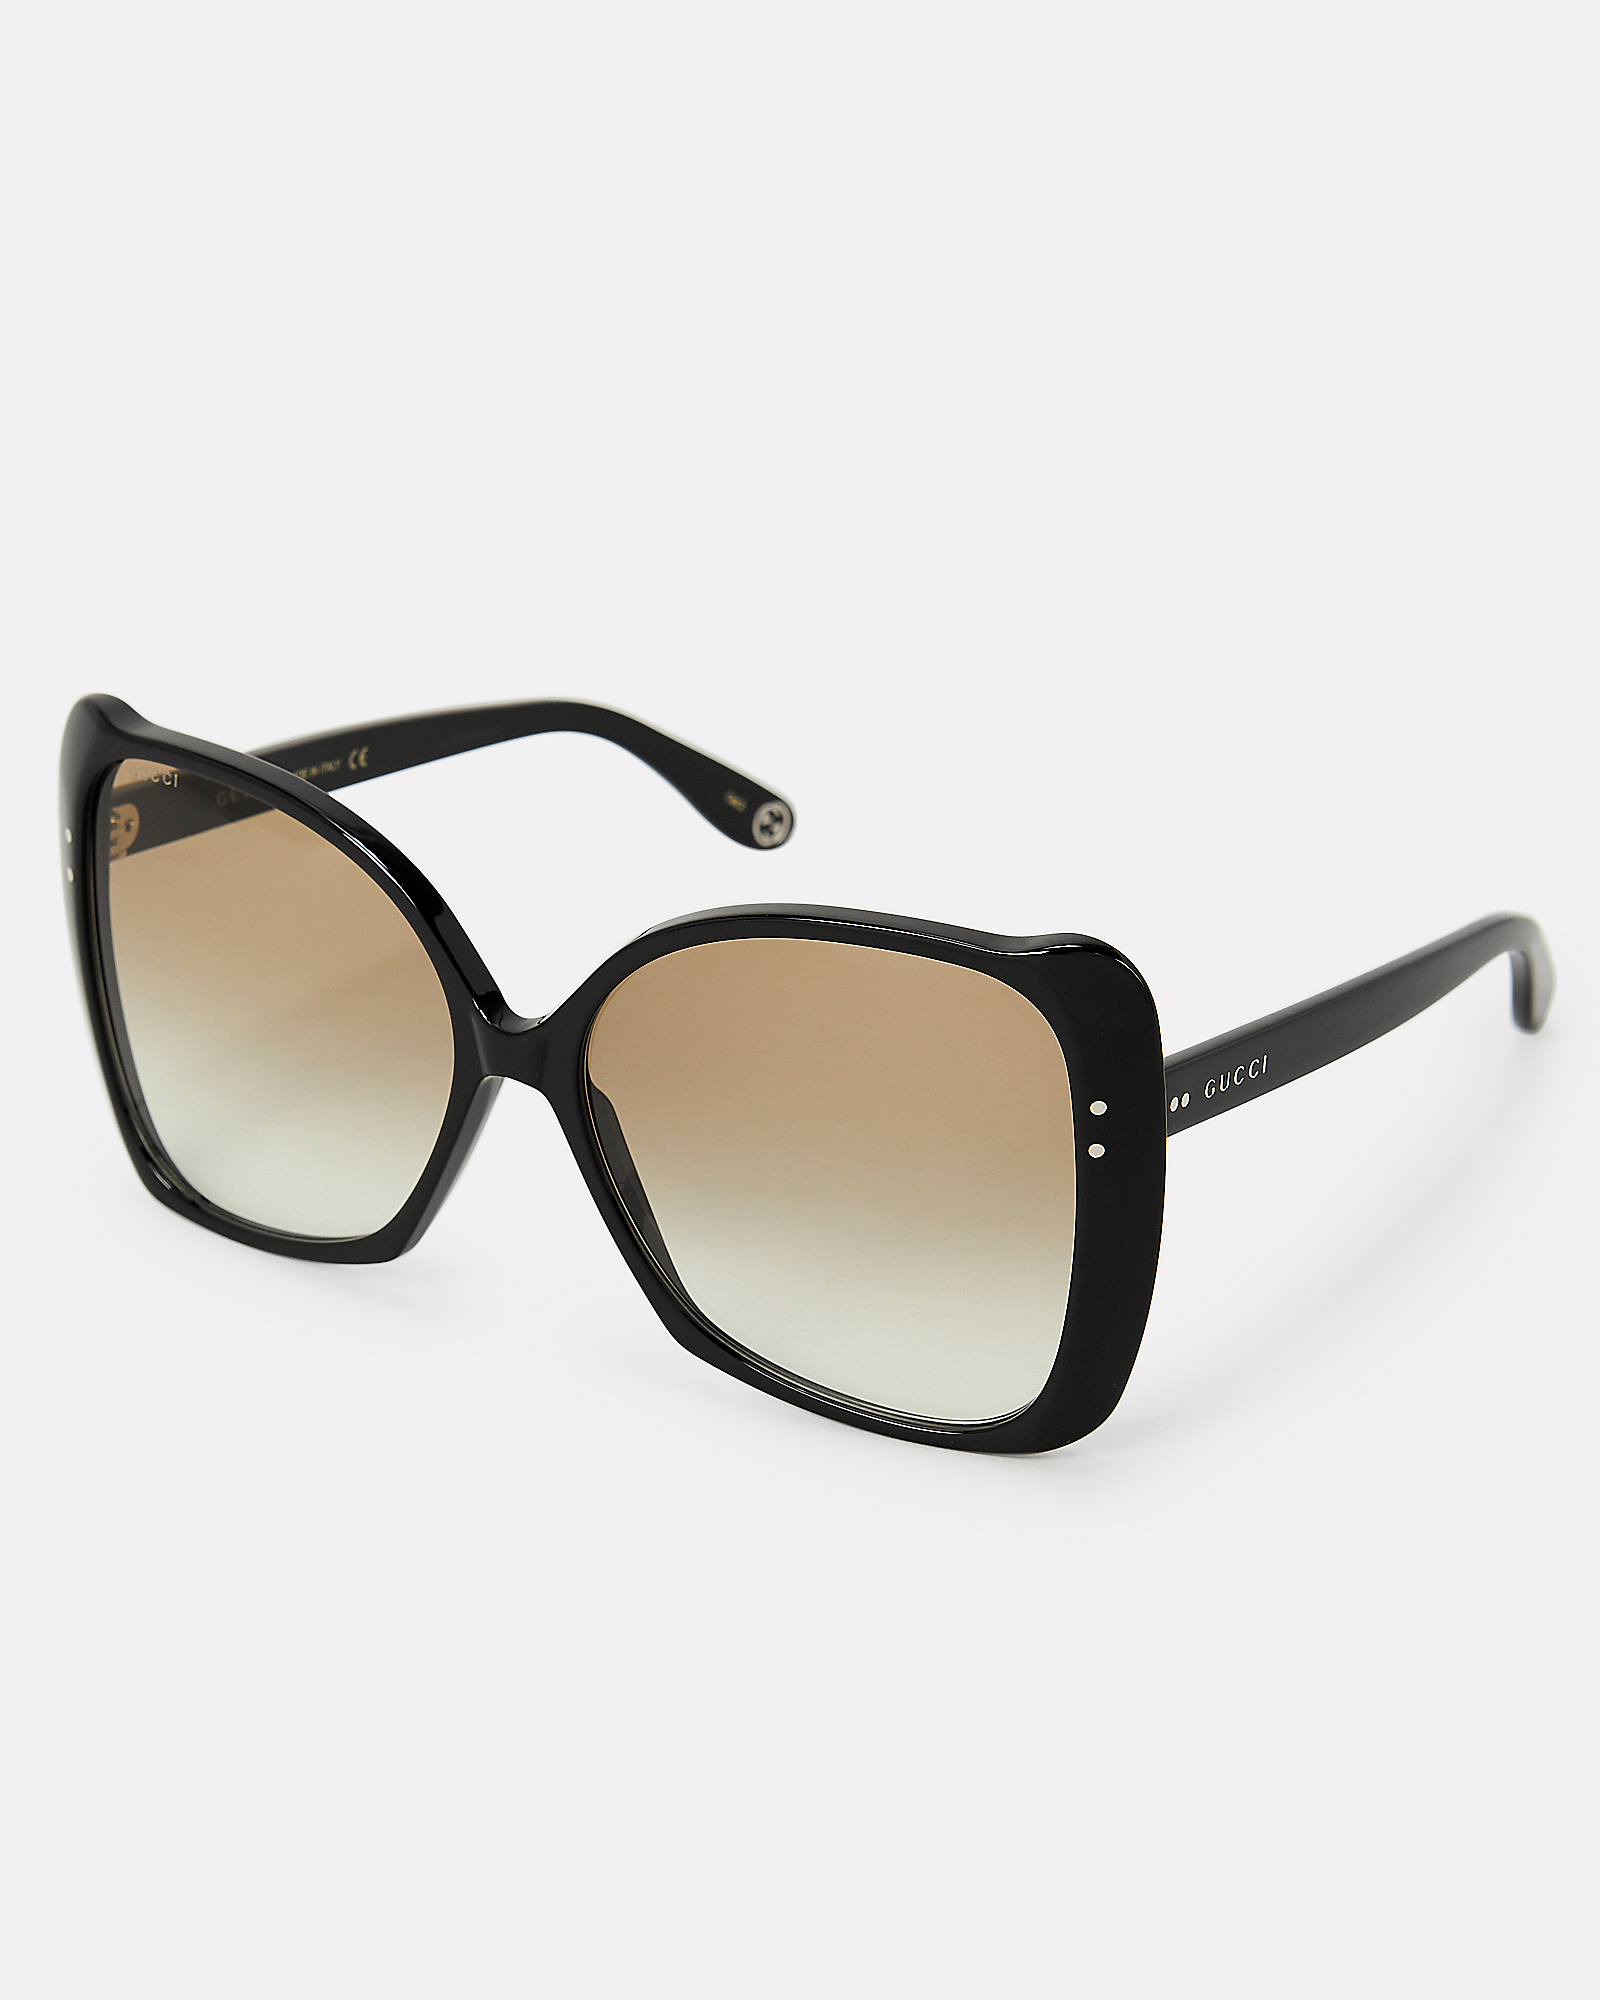 Gucci Oversized Square Frame Sunglasses in beige | INTERMIX®